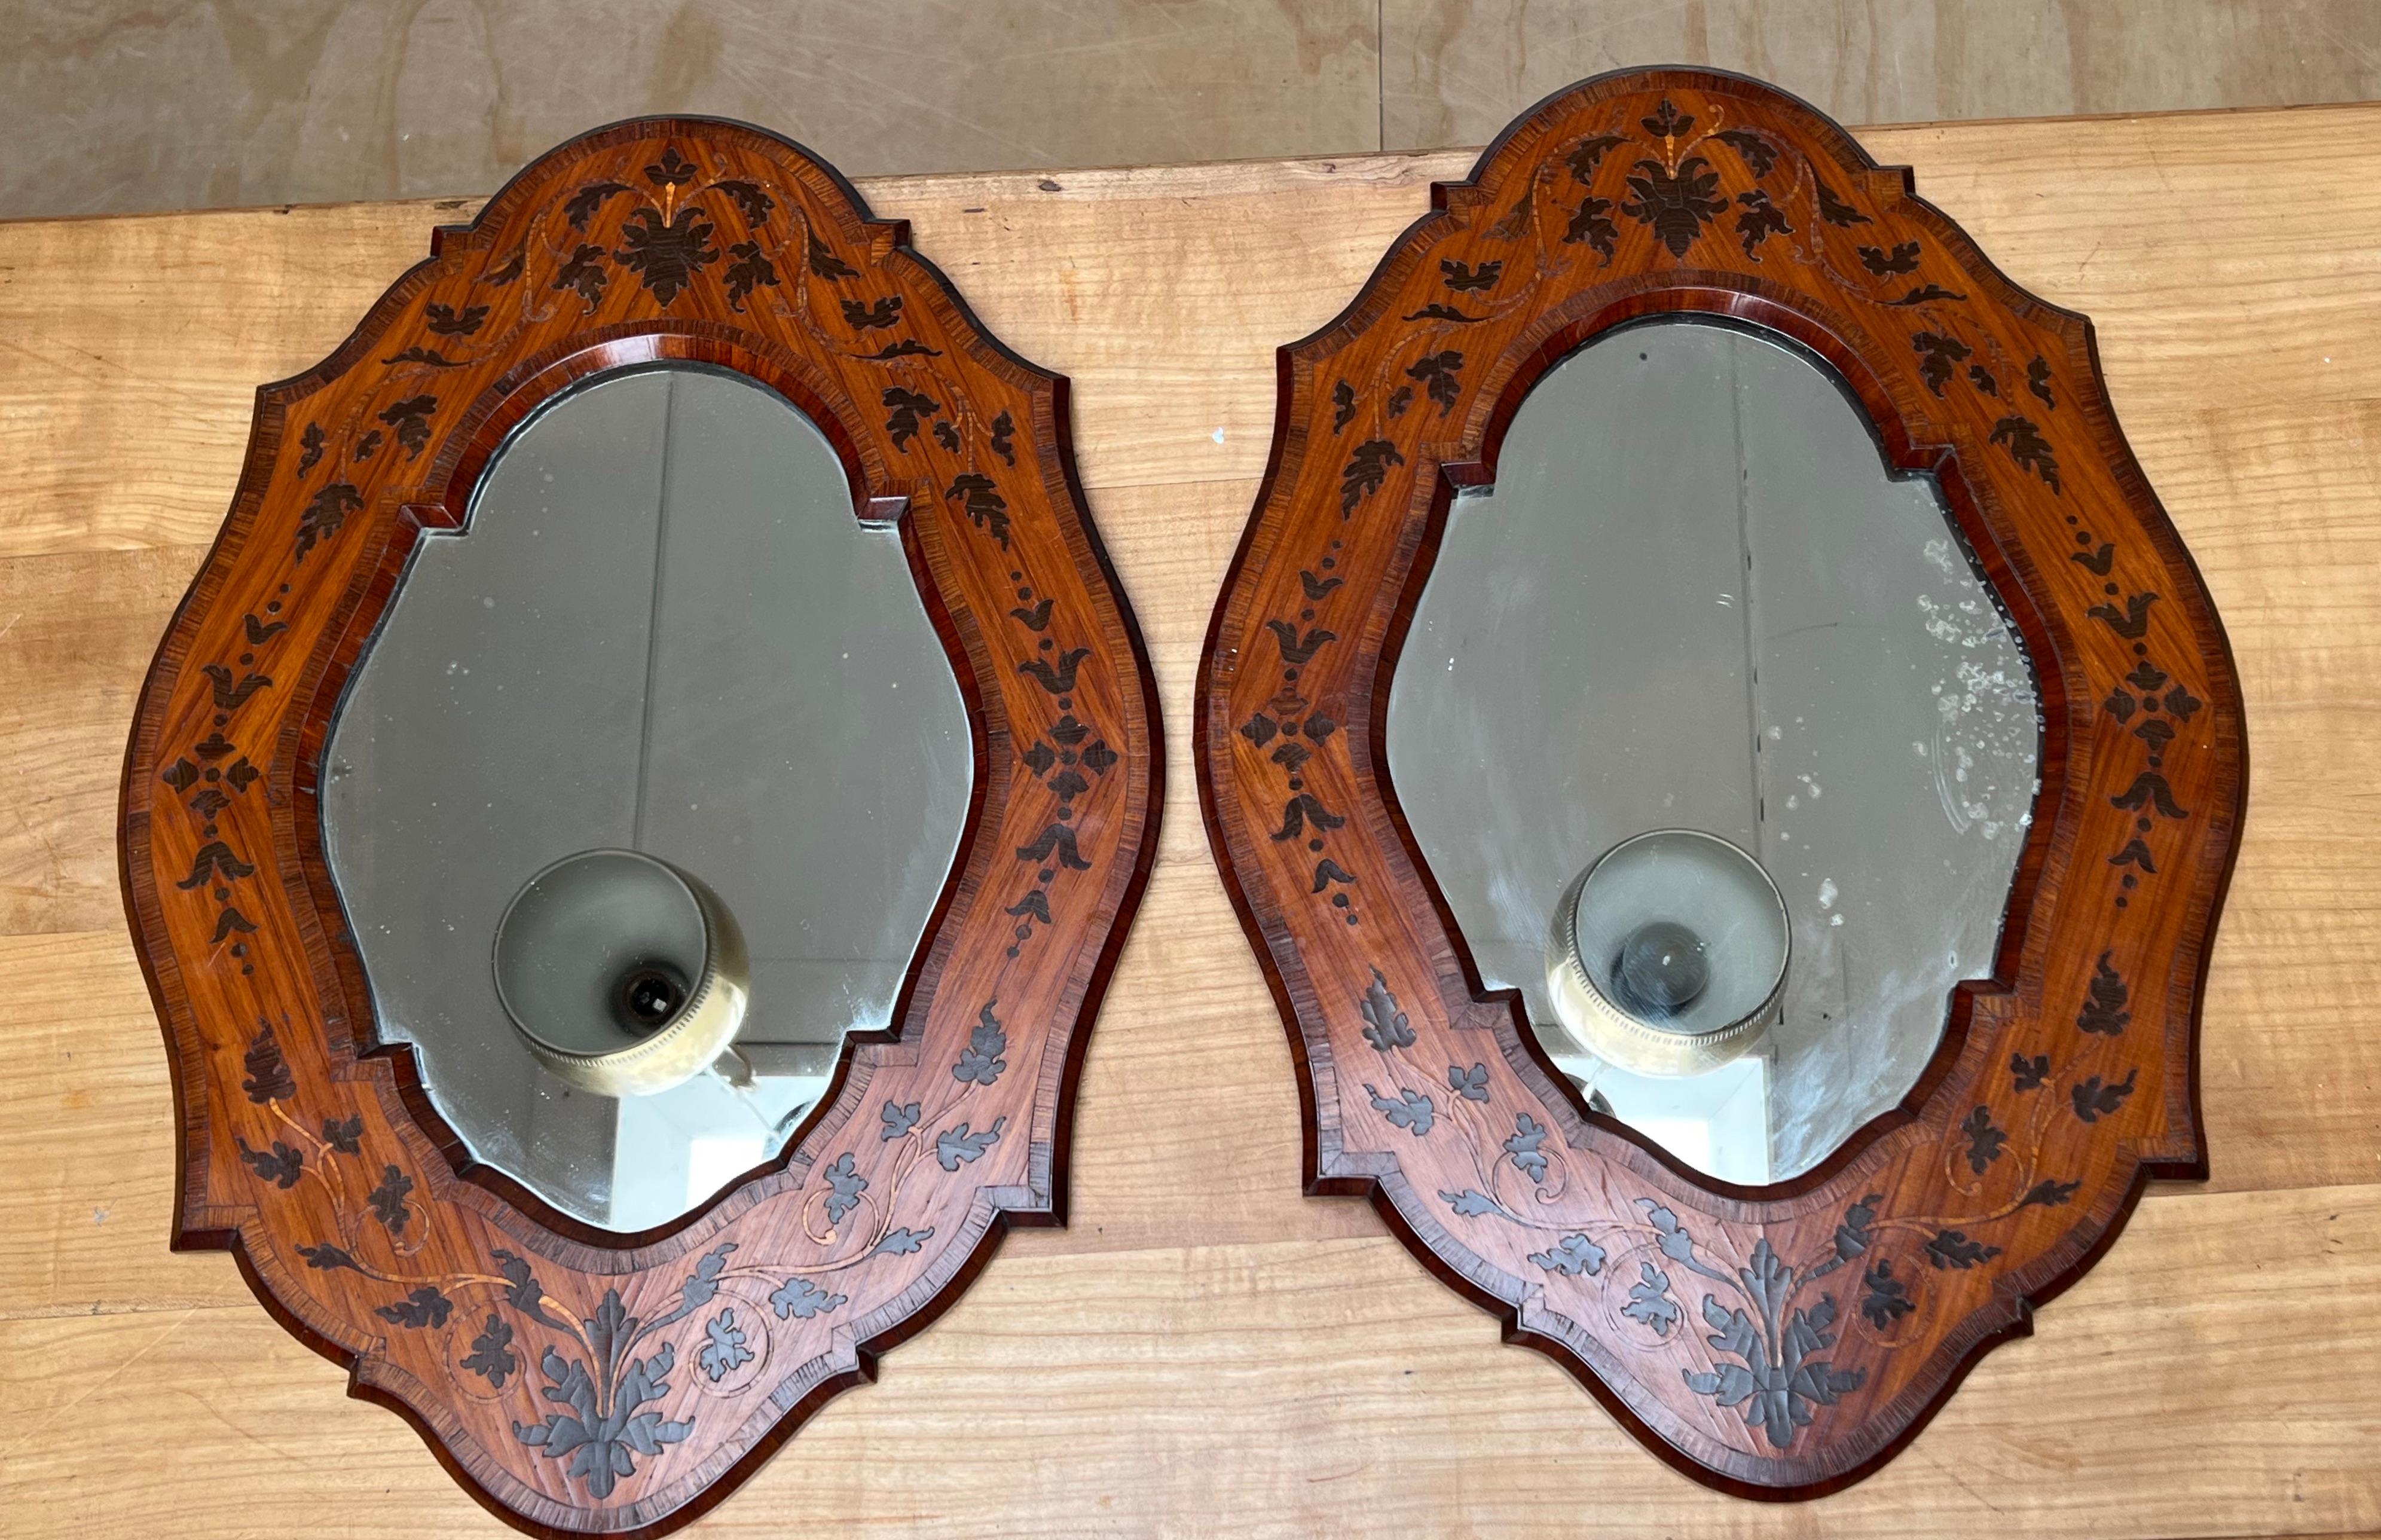 Un ensemble de deux miroirs muraux de forme remarquable, de bonne taille et de grande qualité, fabriqués à la main.

Trouver une antiquité élégante et en très bon état, c'est bien, mais trouver une paire époustouflante, c'est toujours très spécial.